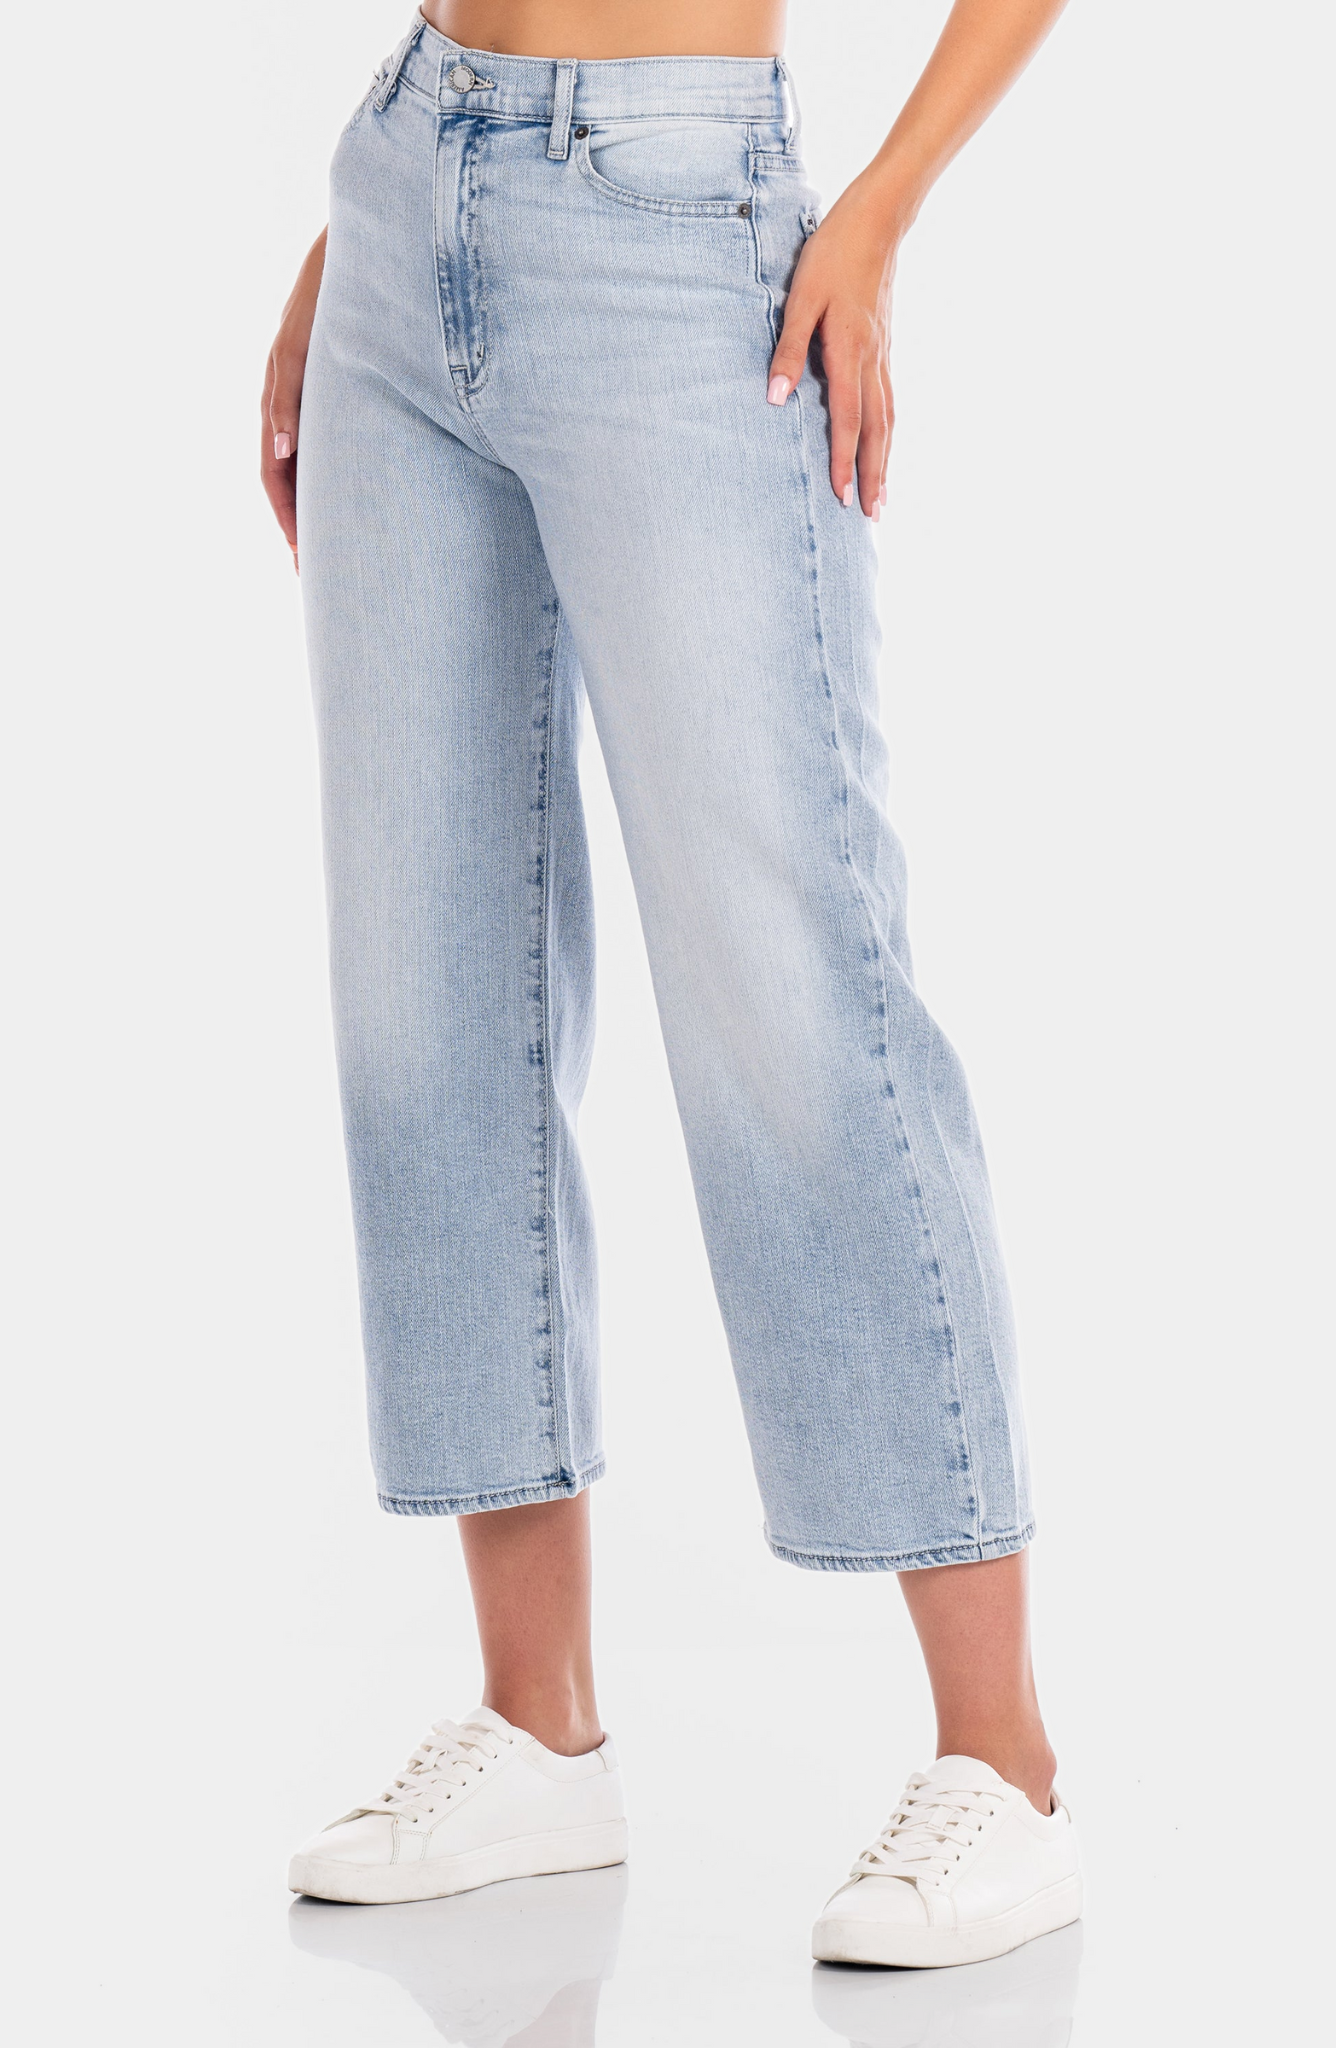 Savannah Jeans